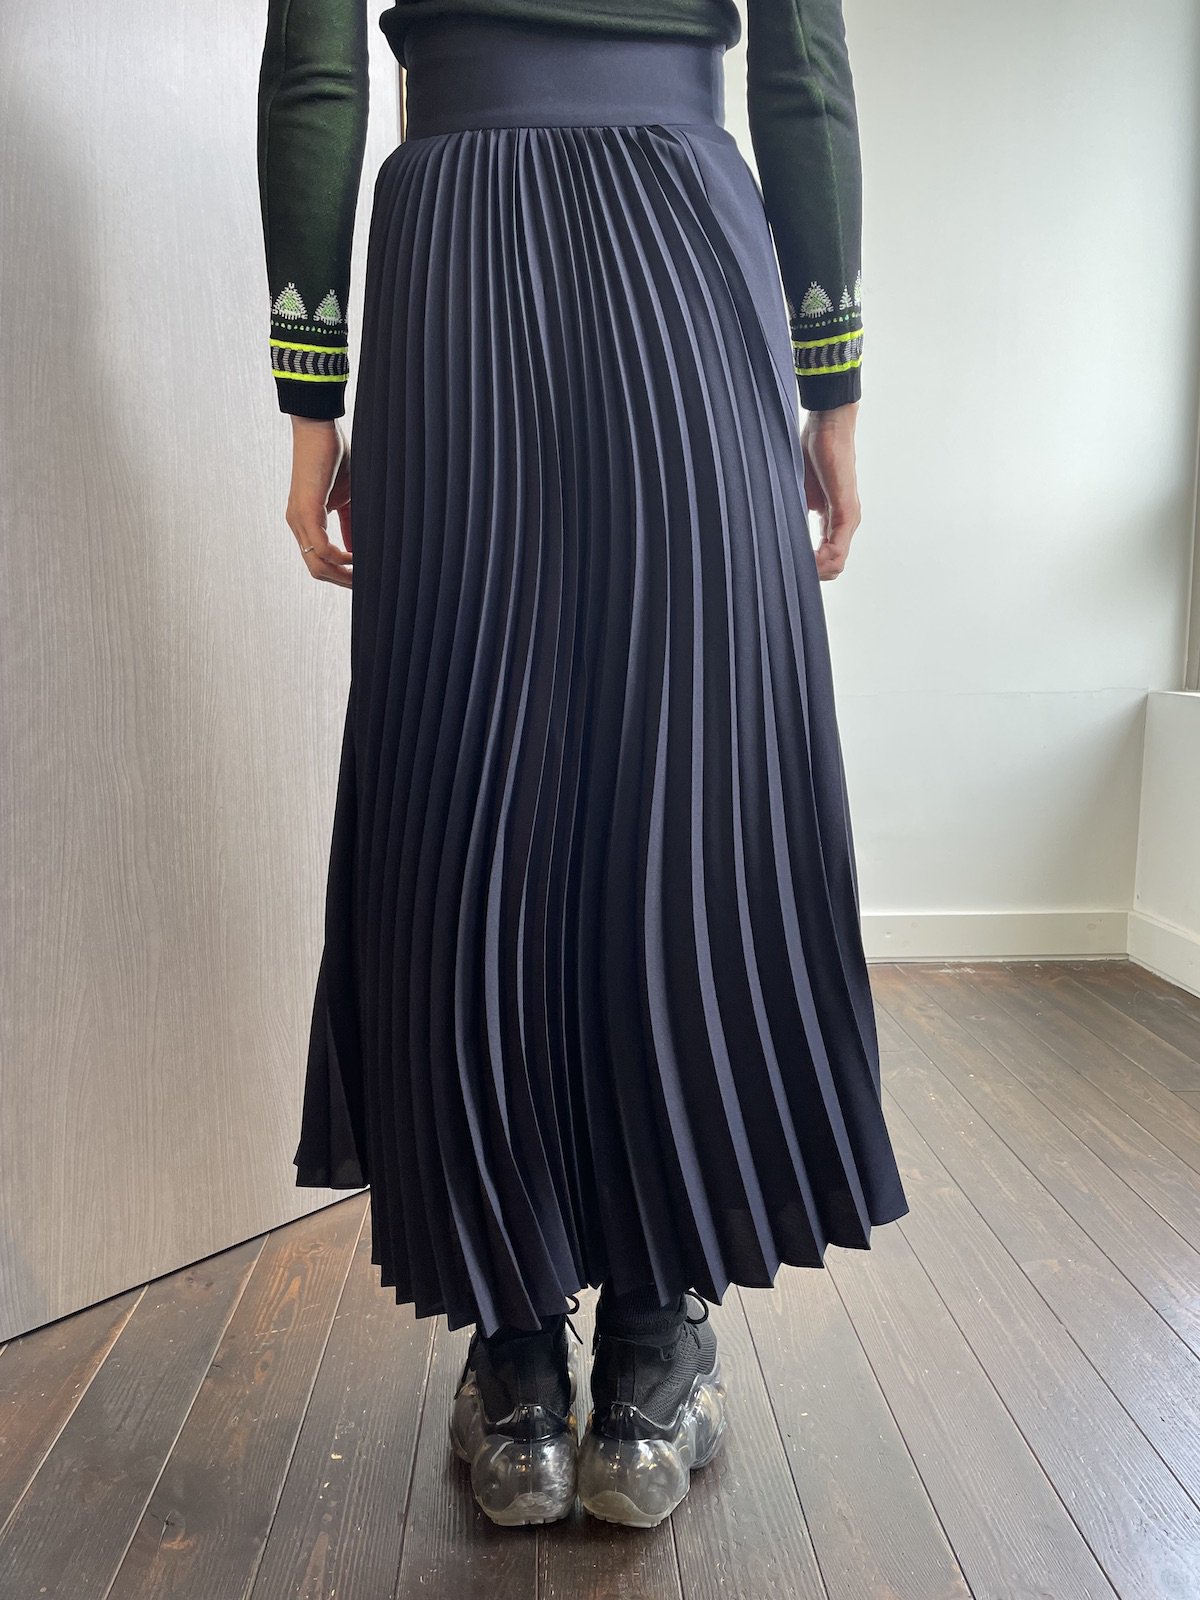 表地ポリエステル100%Mame Kurogouchi Curved Pleated Skirt